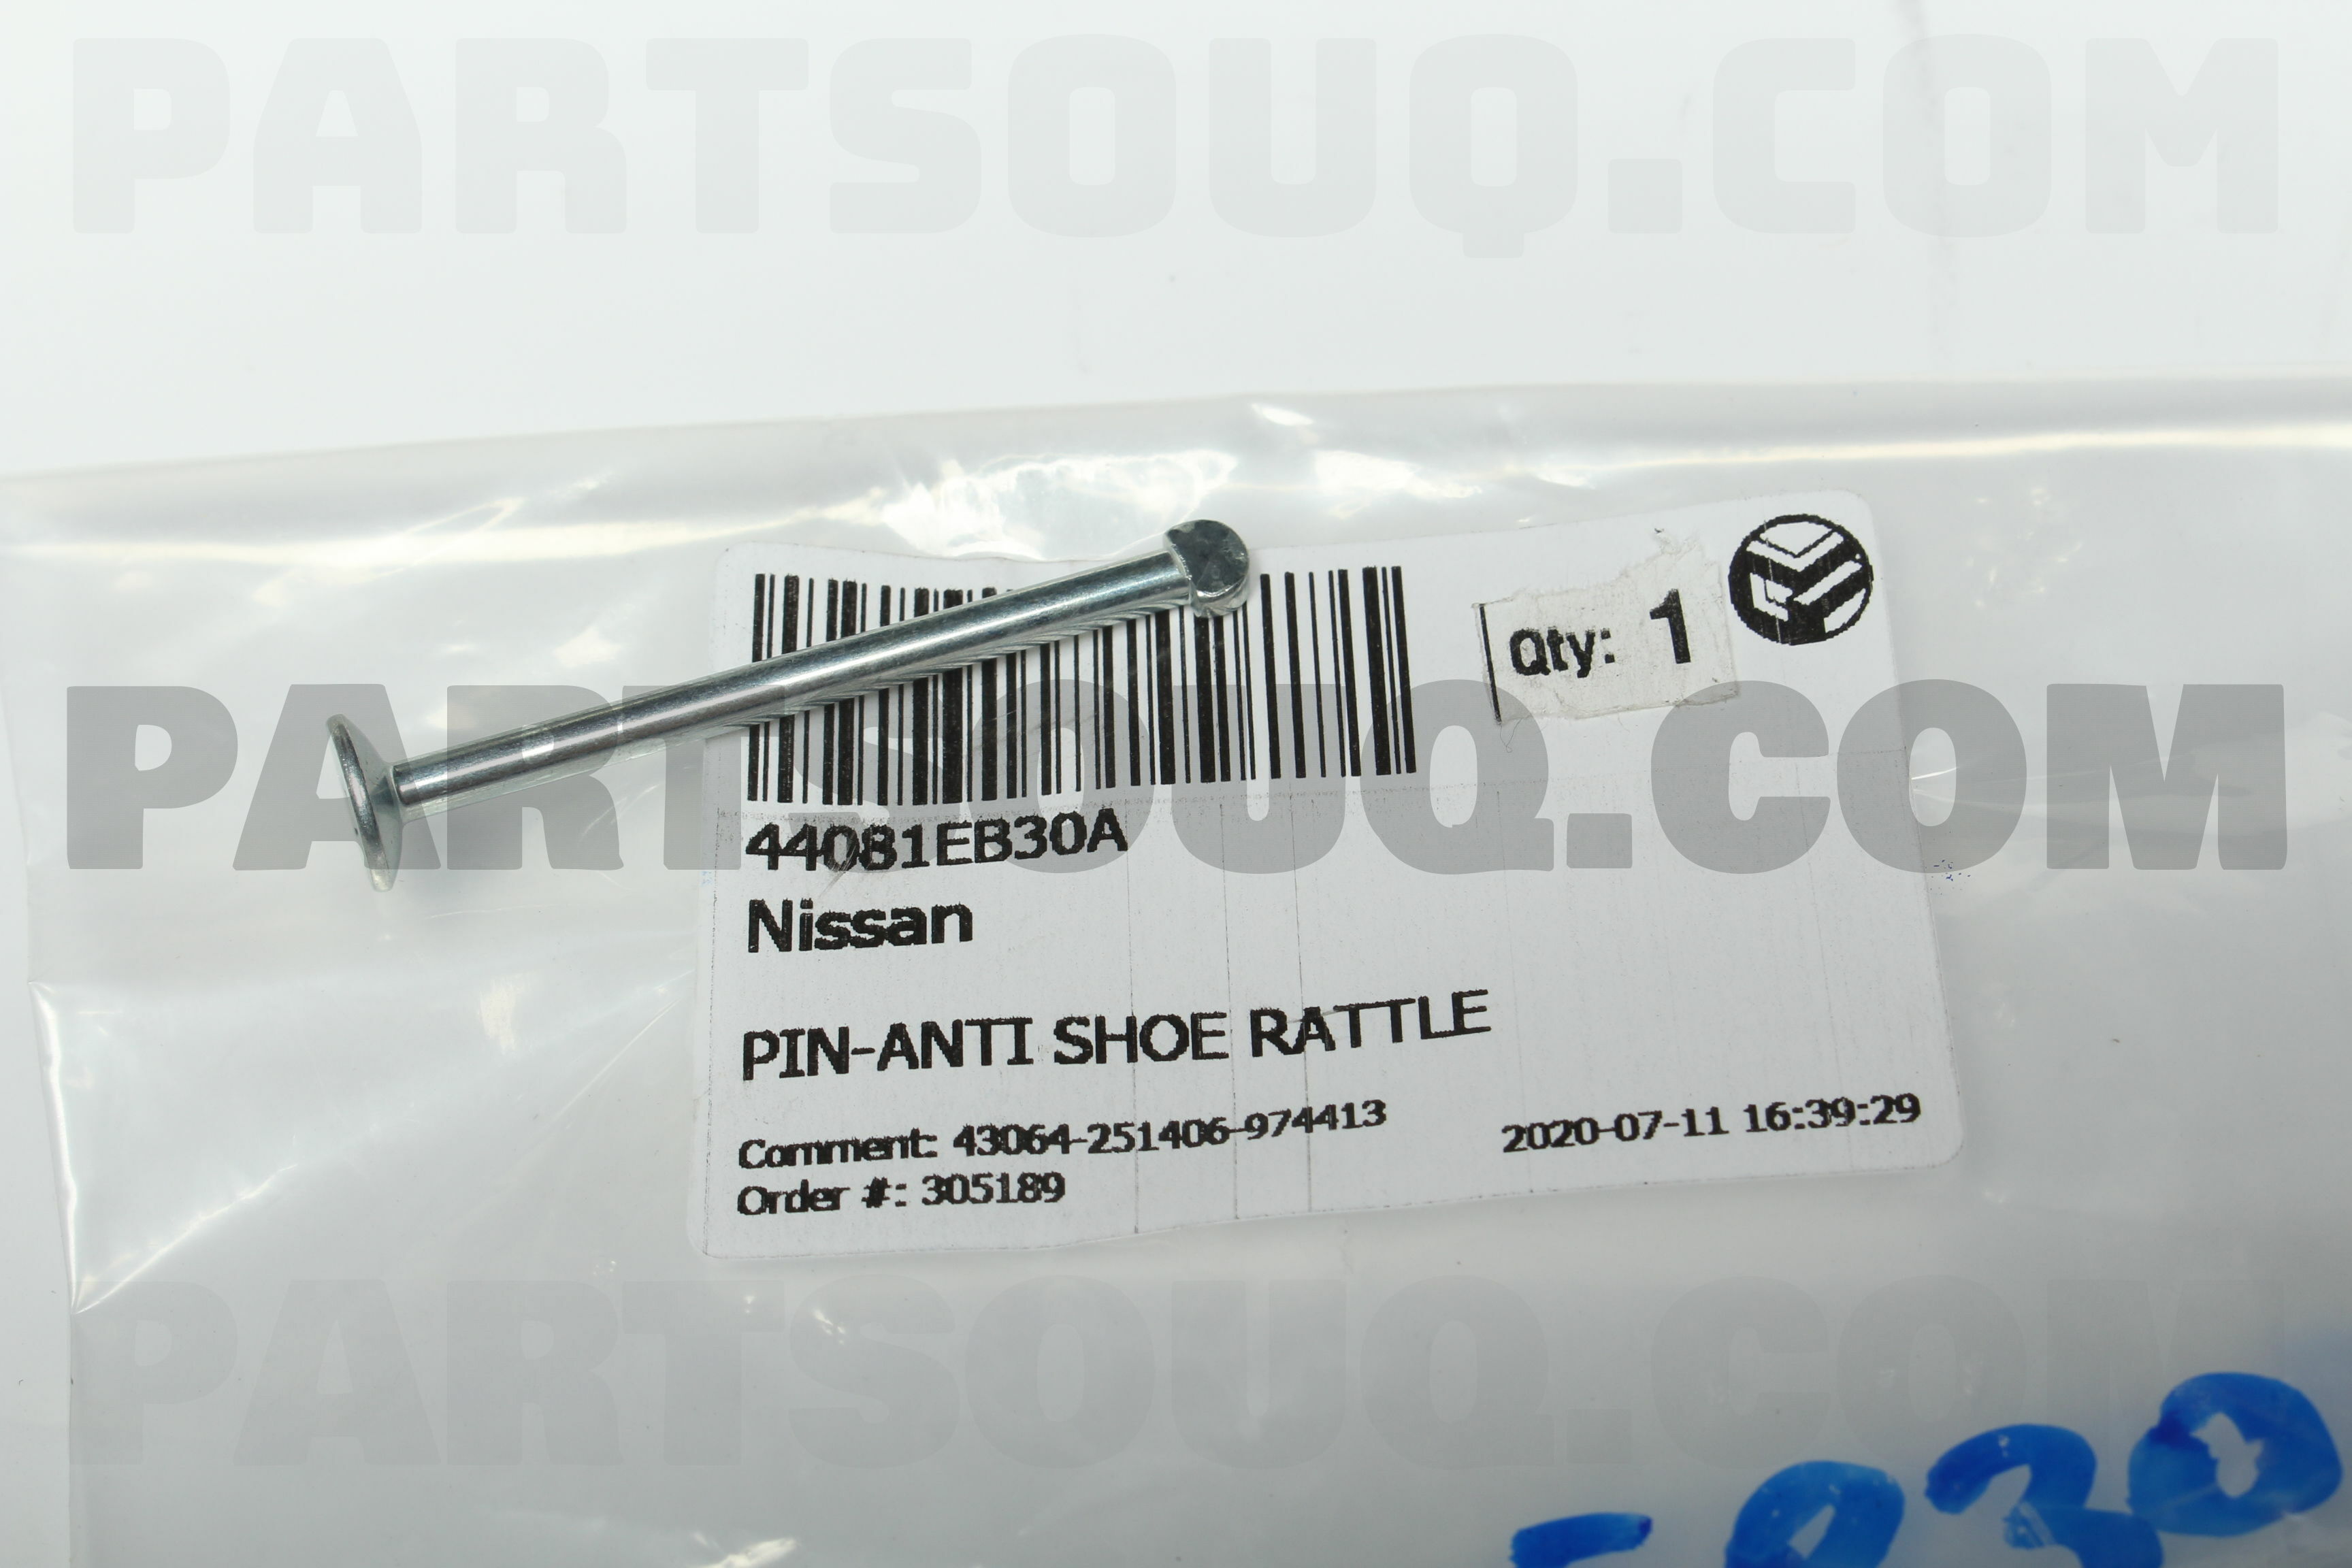 44081EB30A Nissan PIN-ANTI SHOE RATTLE